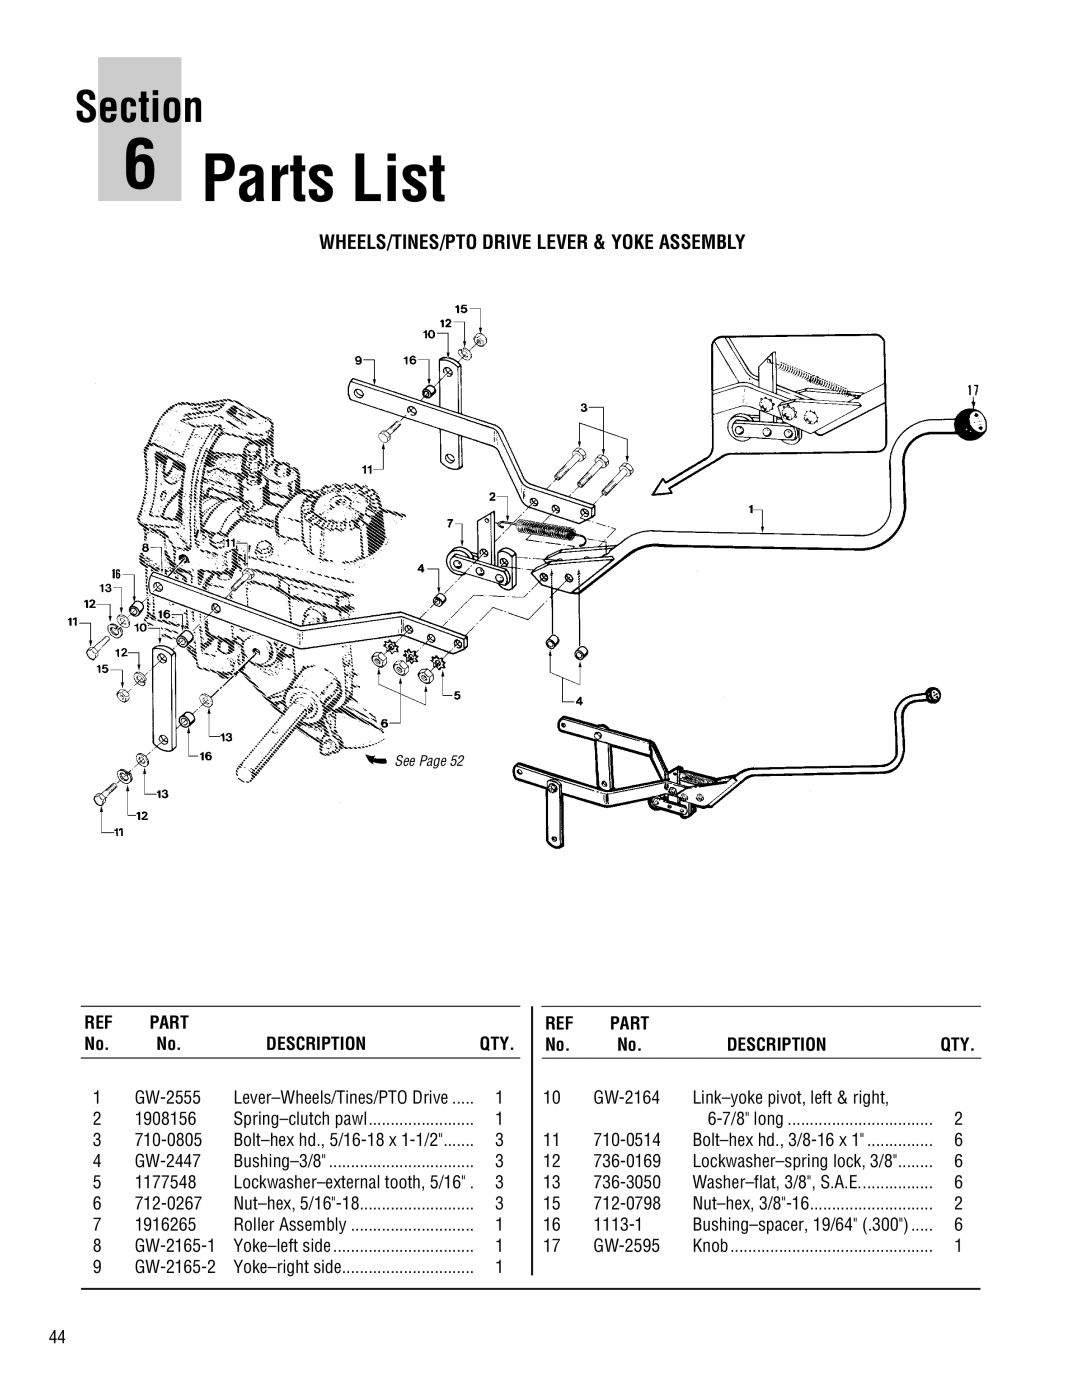 Troy-Bilt E682J-Horse manual Parts List, Wheels/Tines/Pto Drive Lever & Yoke Assembly, Description, Section 